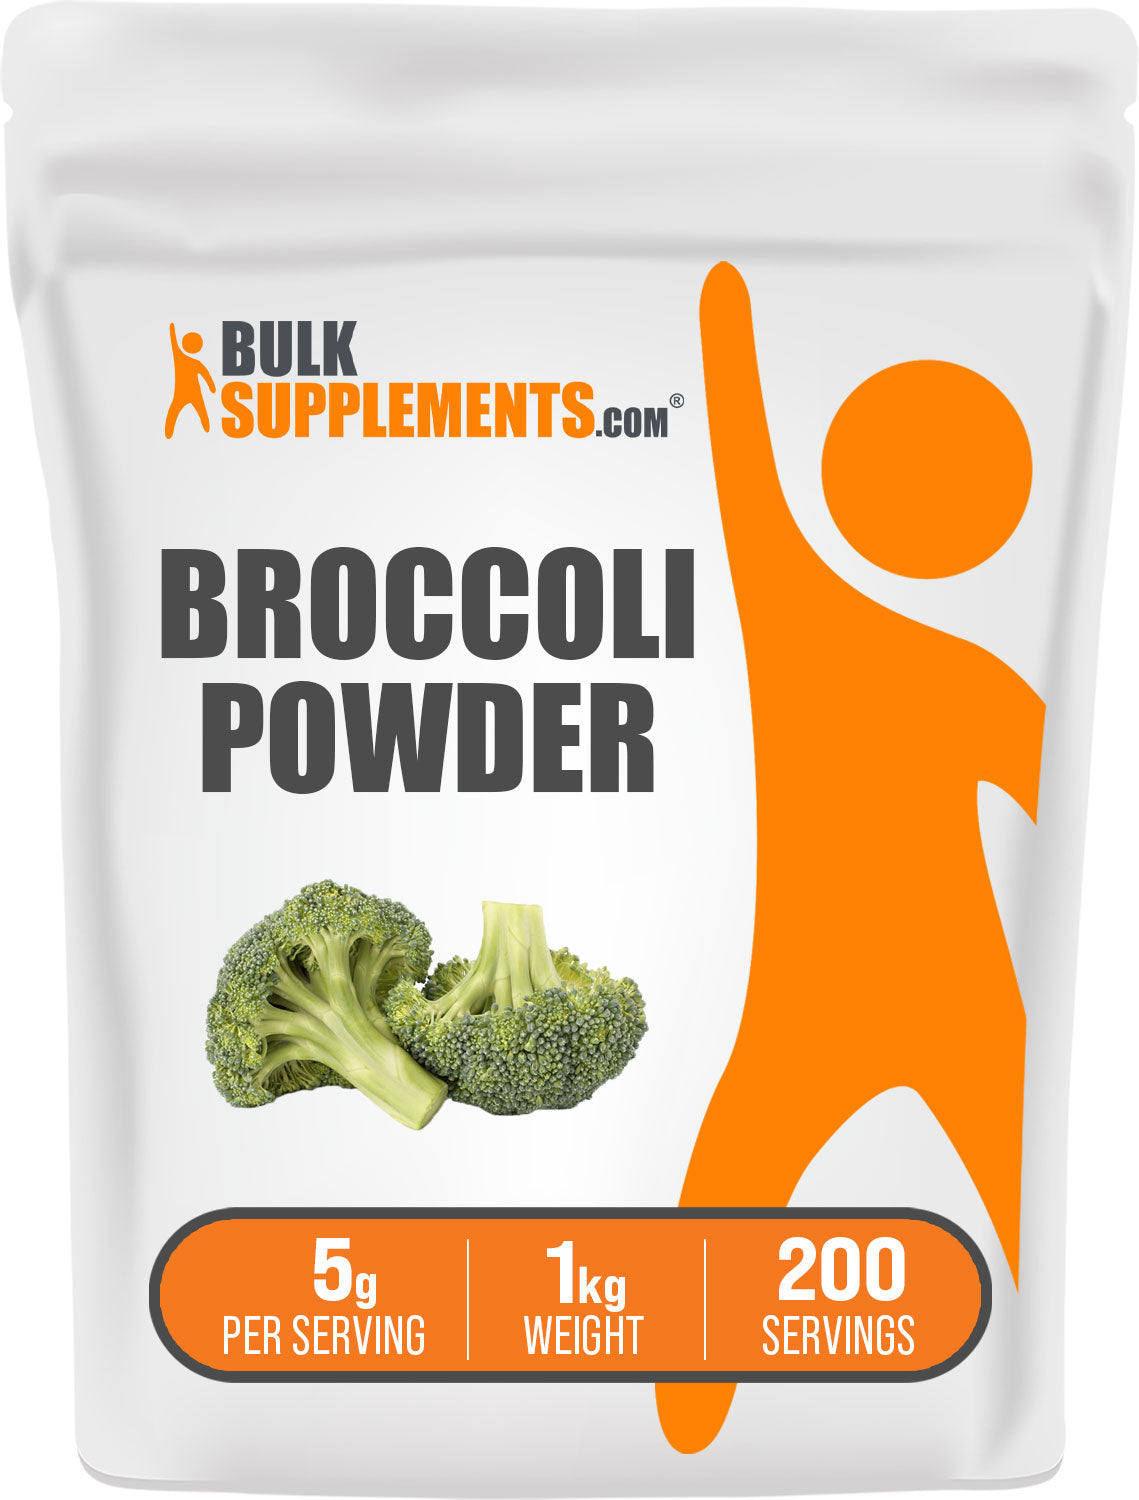 1kg of broccoli powder